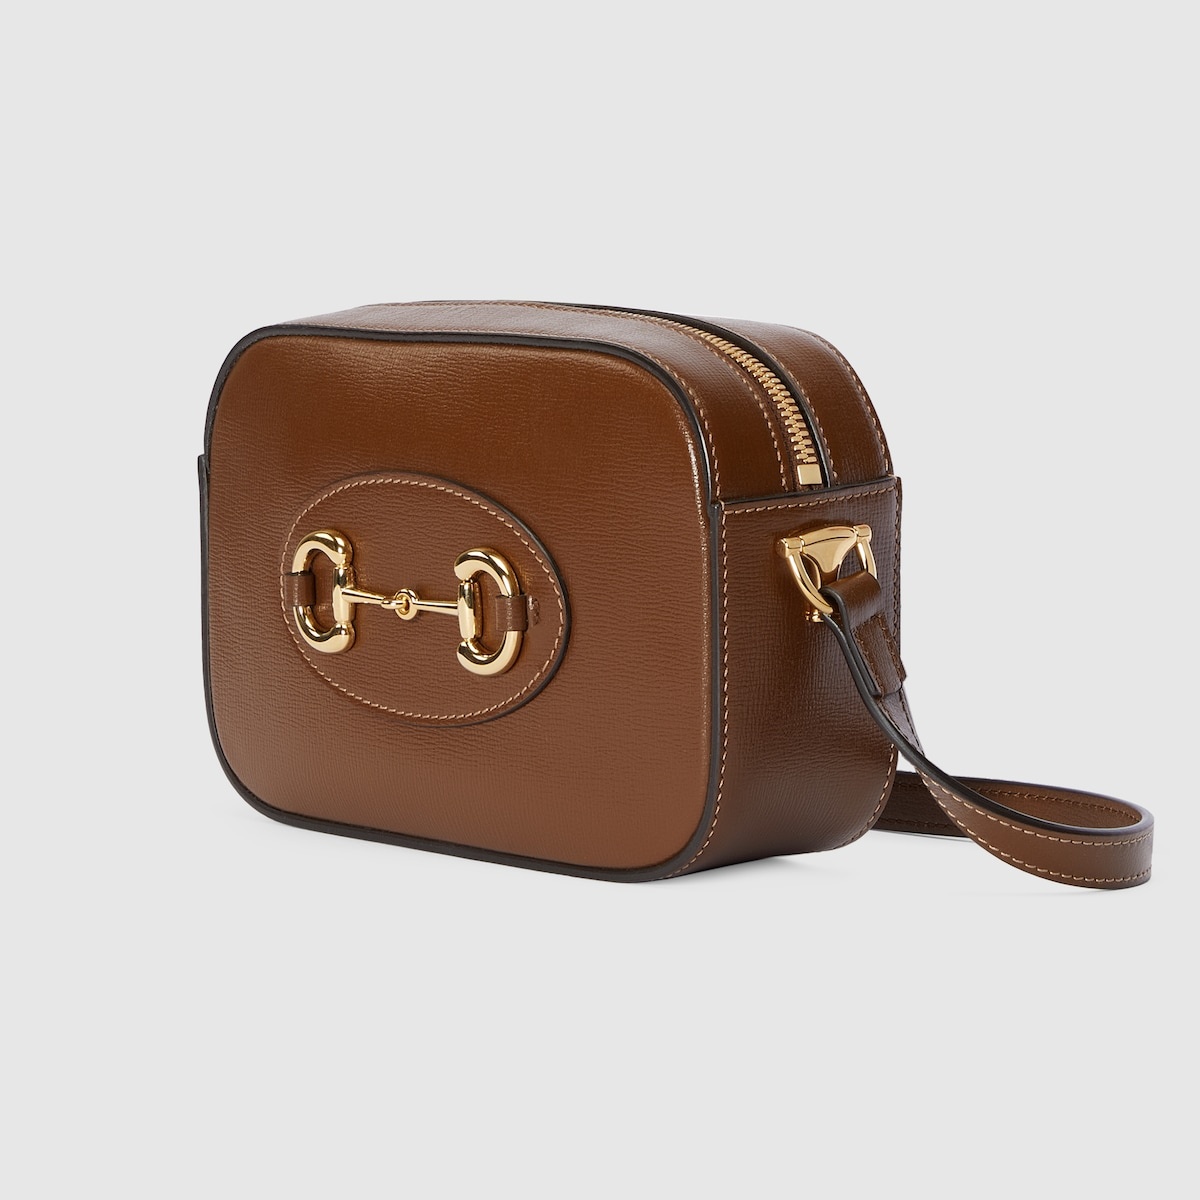 Gucci Horsebit 1955 small shoulder bag - 2